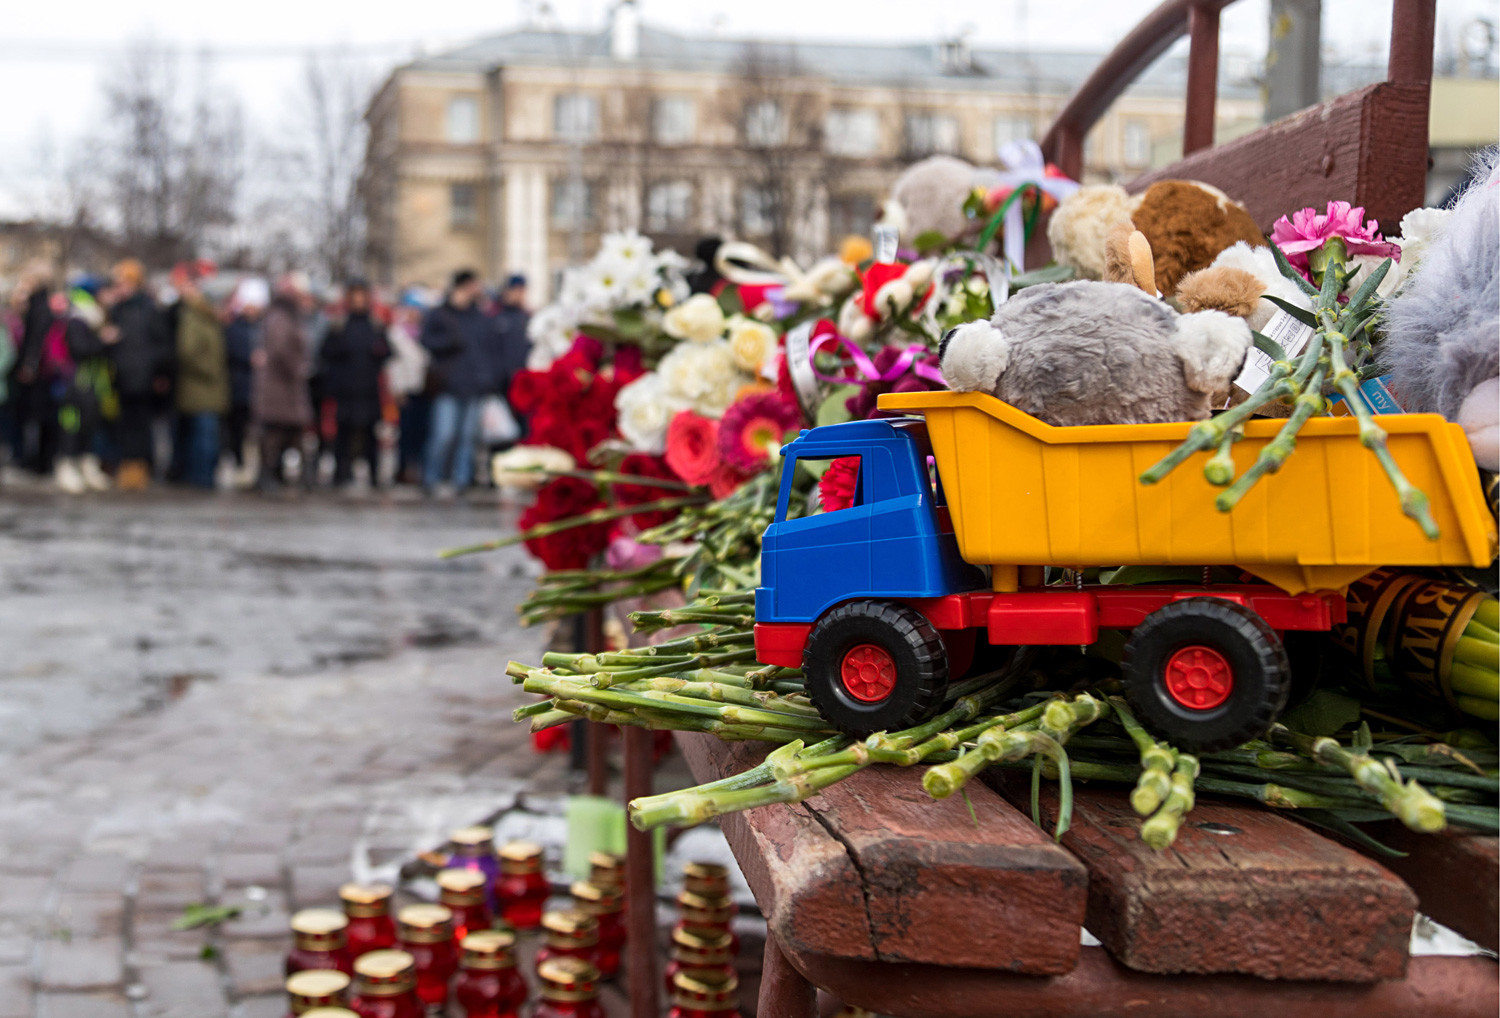 Flores, velas y juguetes delante del centro comercial “Zímniaia Víshnia” en Kémerovo.